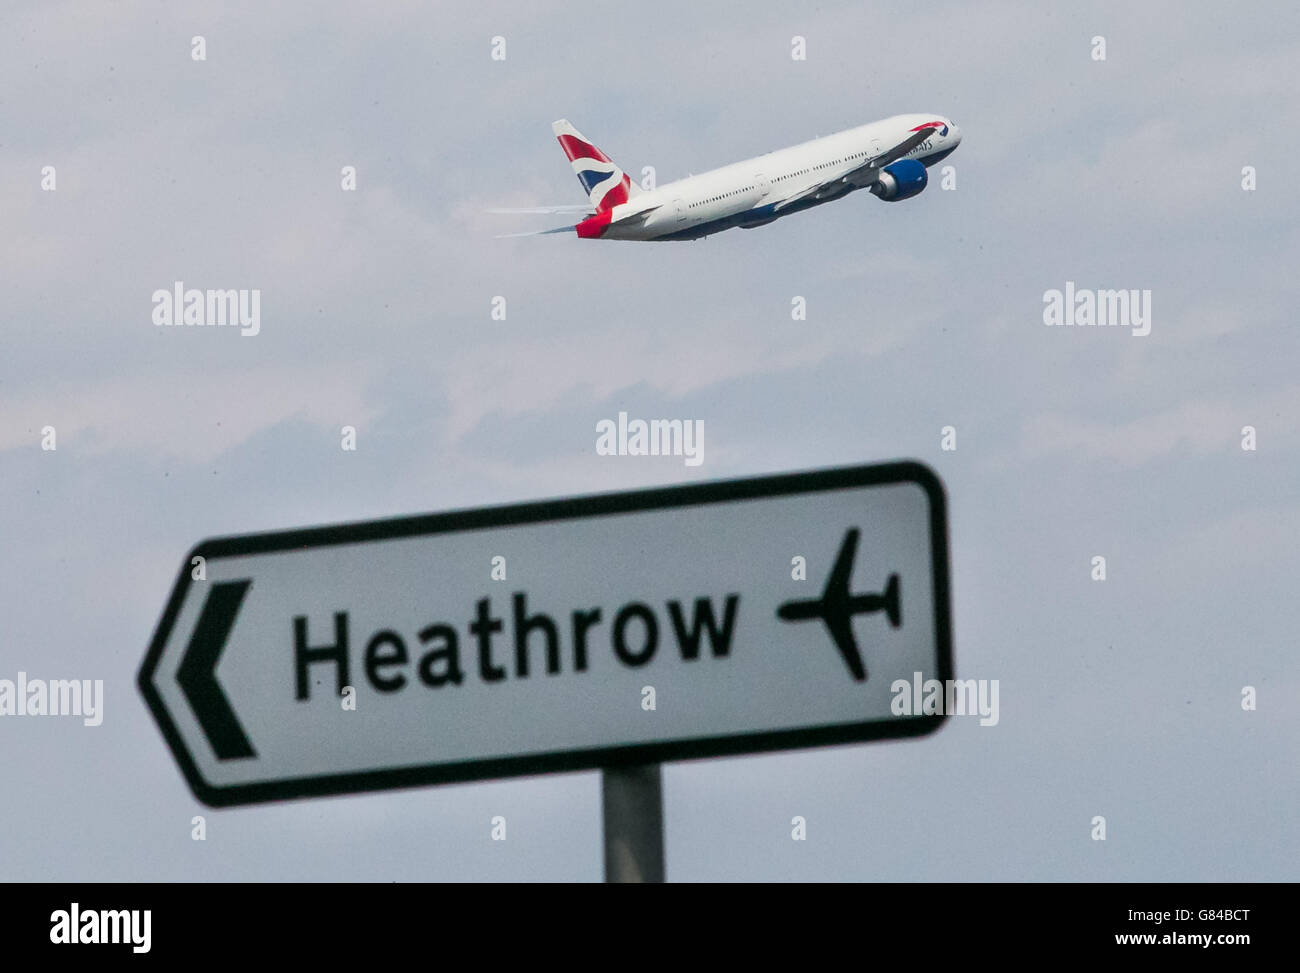 Un aereo della British Airways decolli dall'aeroporto di Heathrow. Un acceso dibattito sulle capacità aeroportuali sta imperversa dopo che un rapporto atteso da tempo raccomandava di costruire una nuova pista a Heathrow piuttosto che a Gatwick. Foto Stock